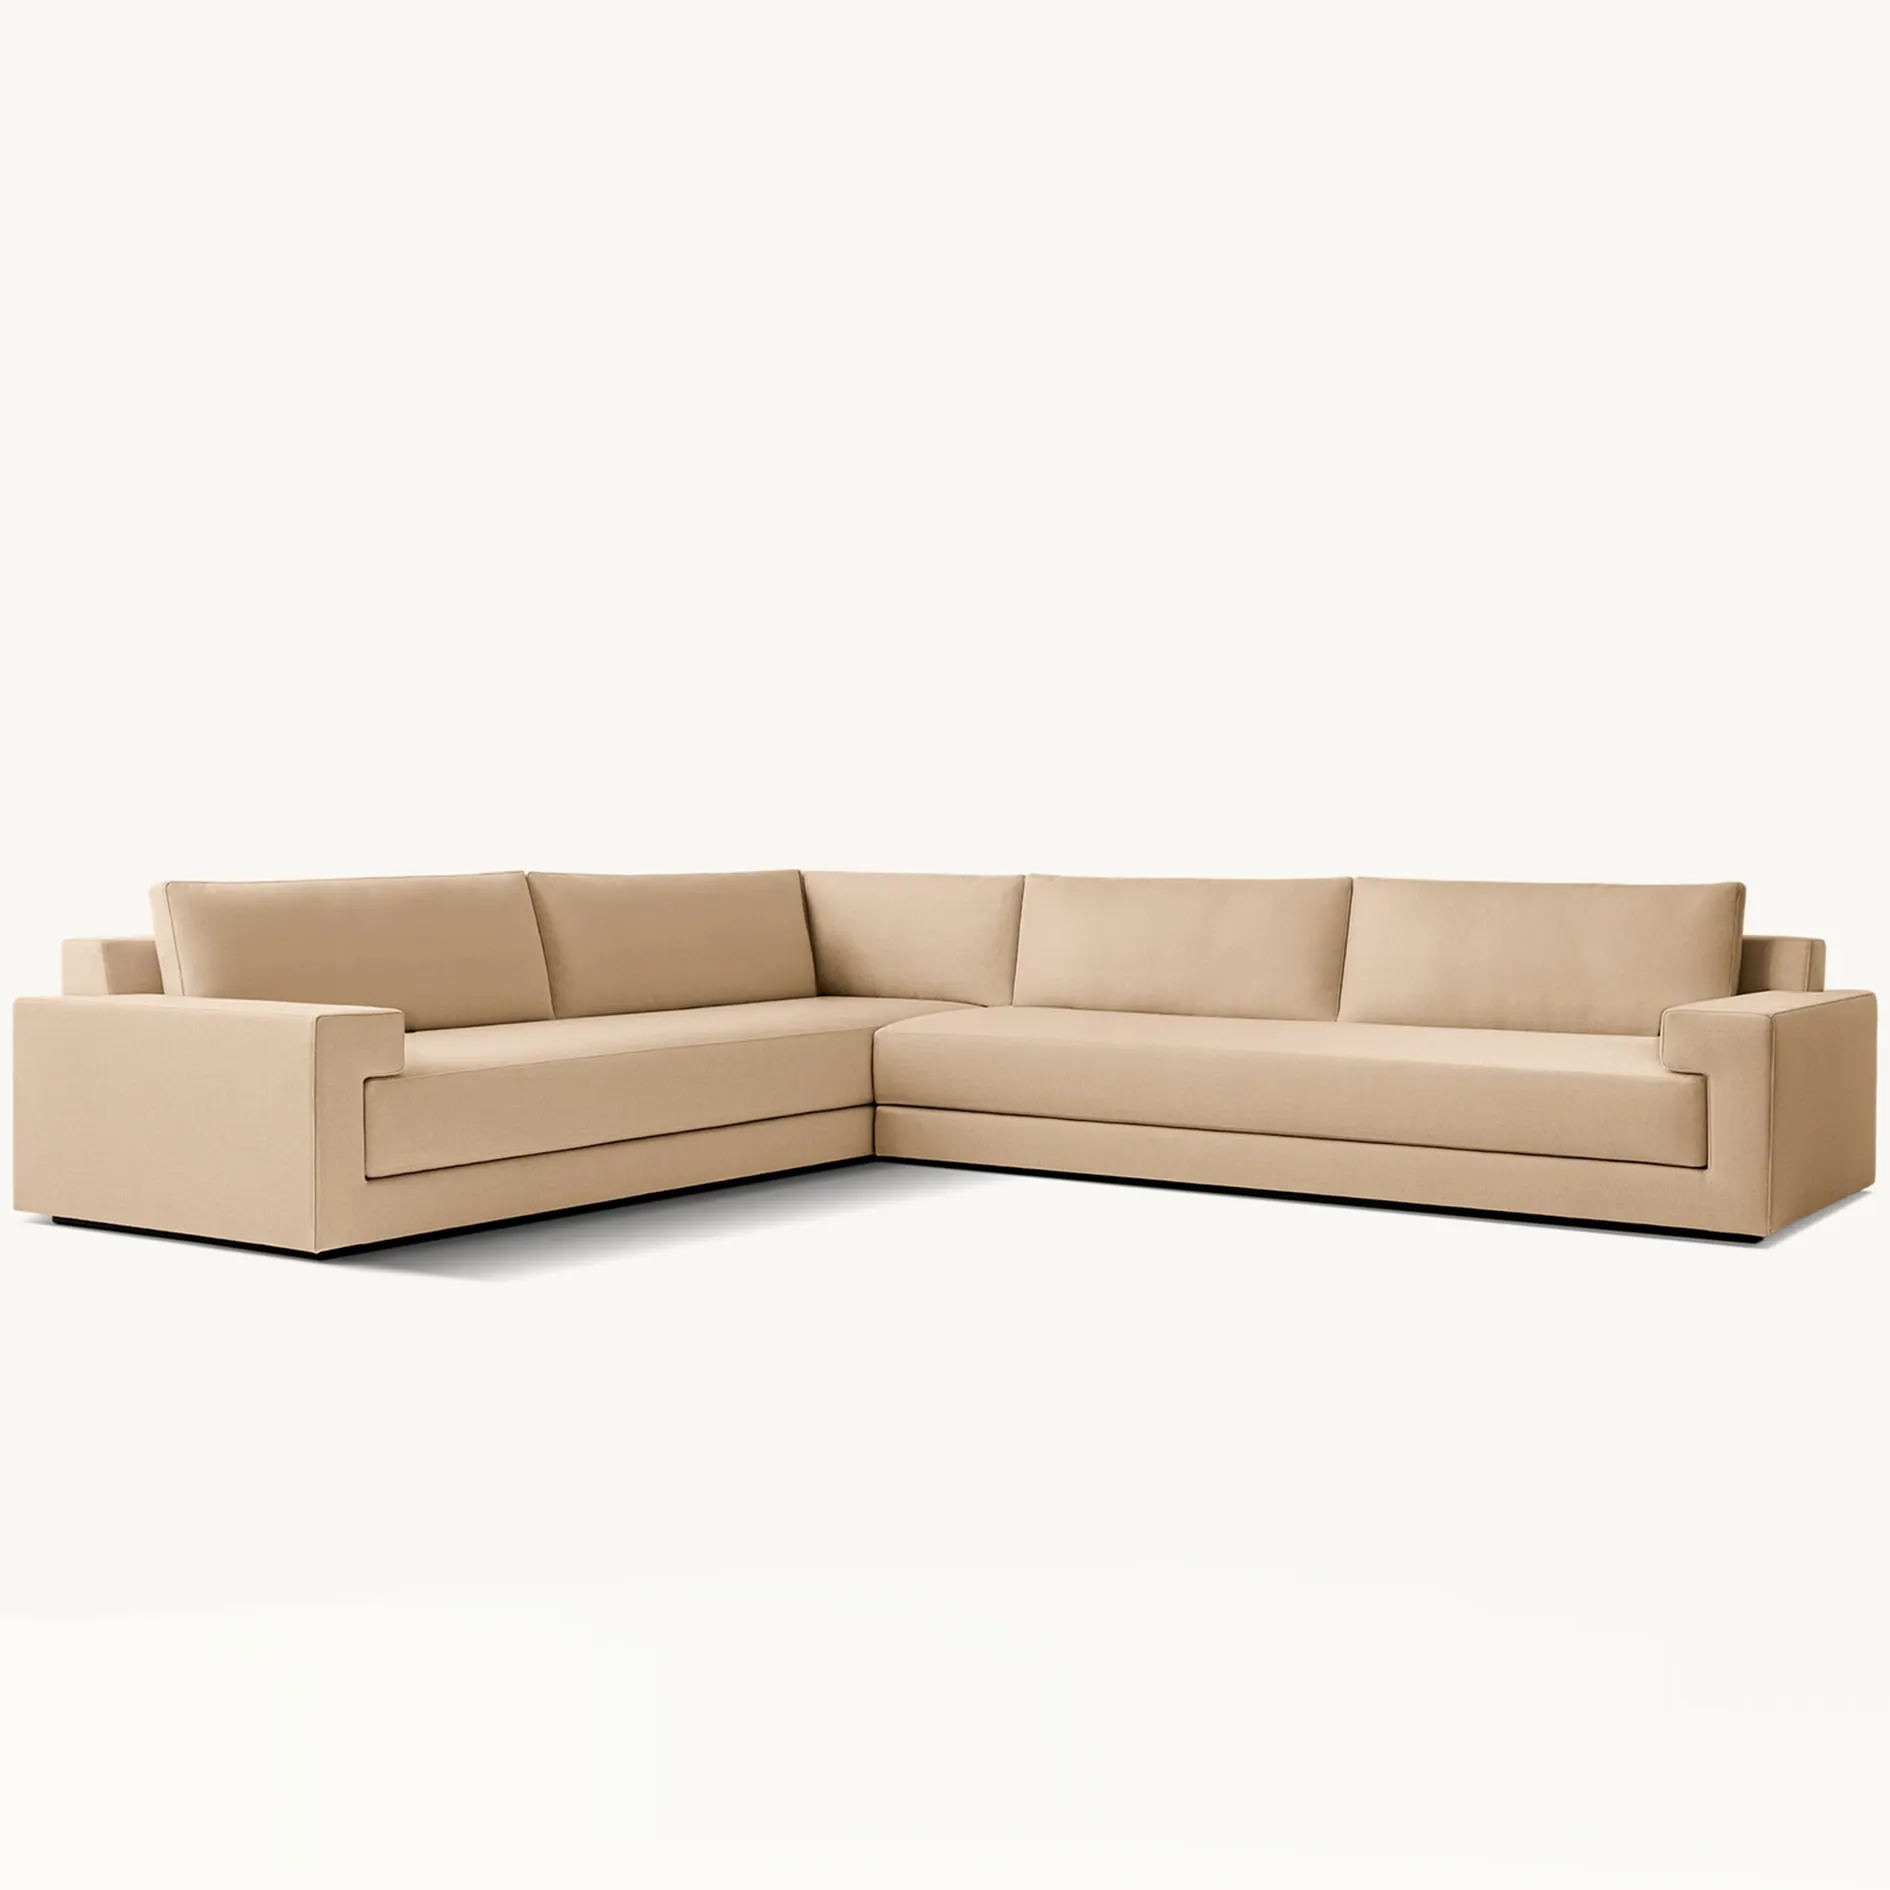 Lusso Design unico Villa componibile componibile soggiorno mobili divano a forma di L divani